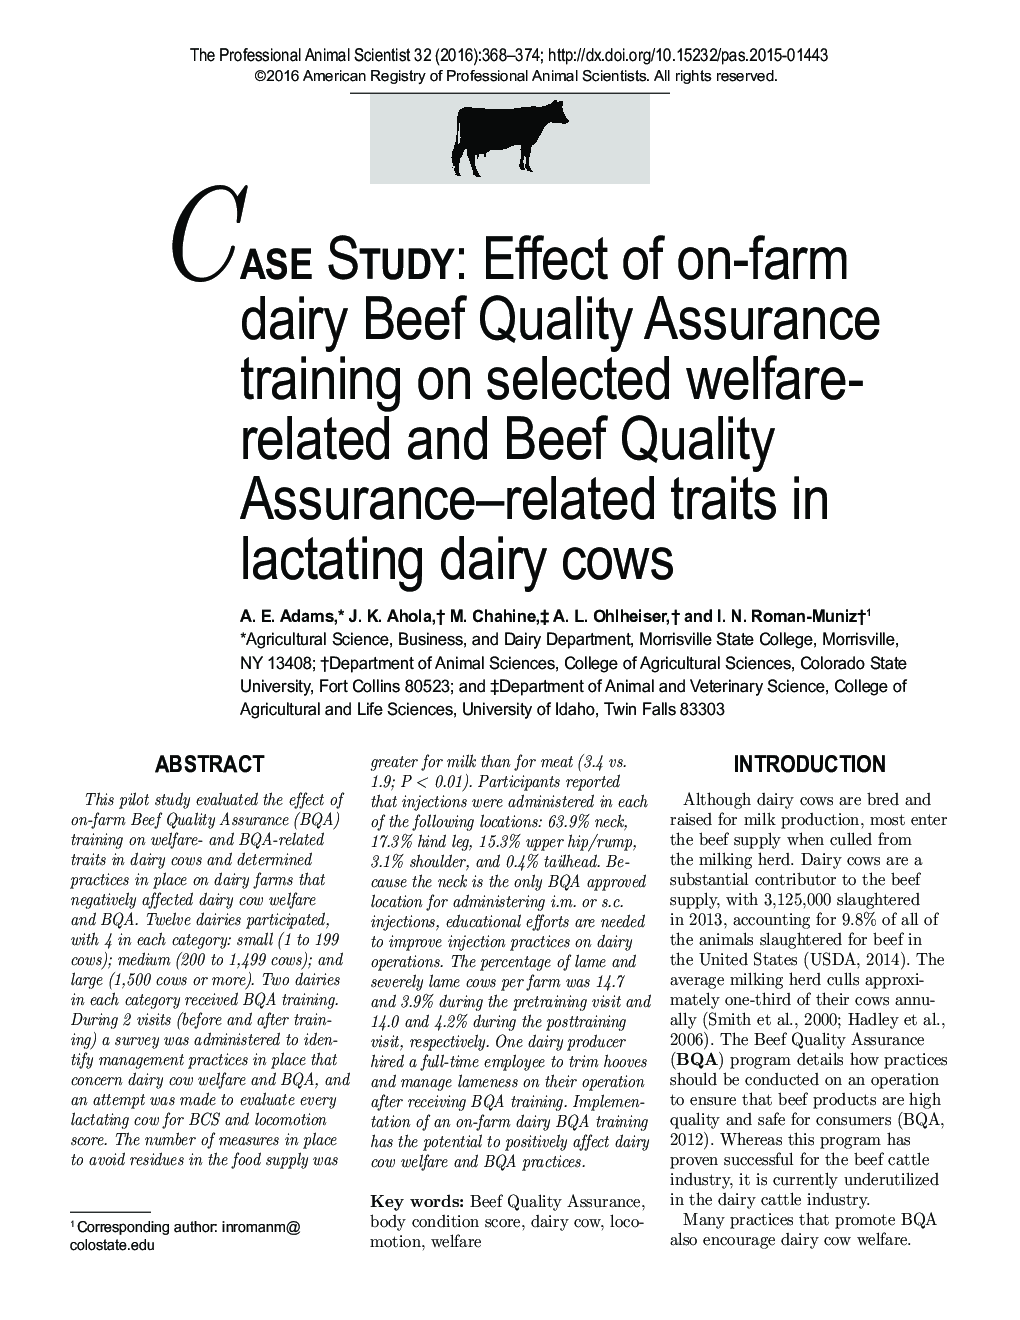 مطالعه موردی: تأثیر آموزش تضمین کیفیت گوشت گوسفند در مزرعه بر صفات مرتبط با رفاه و گواهی گوشت گاو در گاو های شیرده 